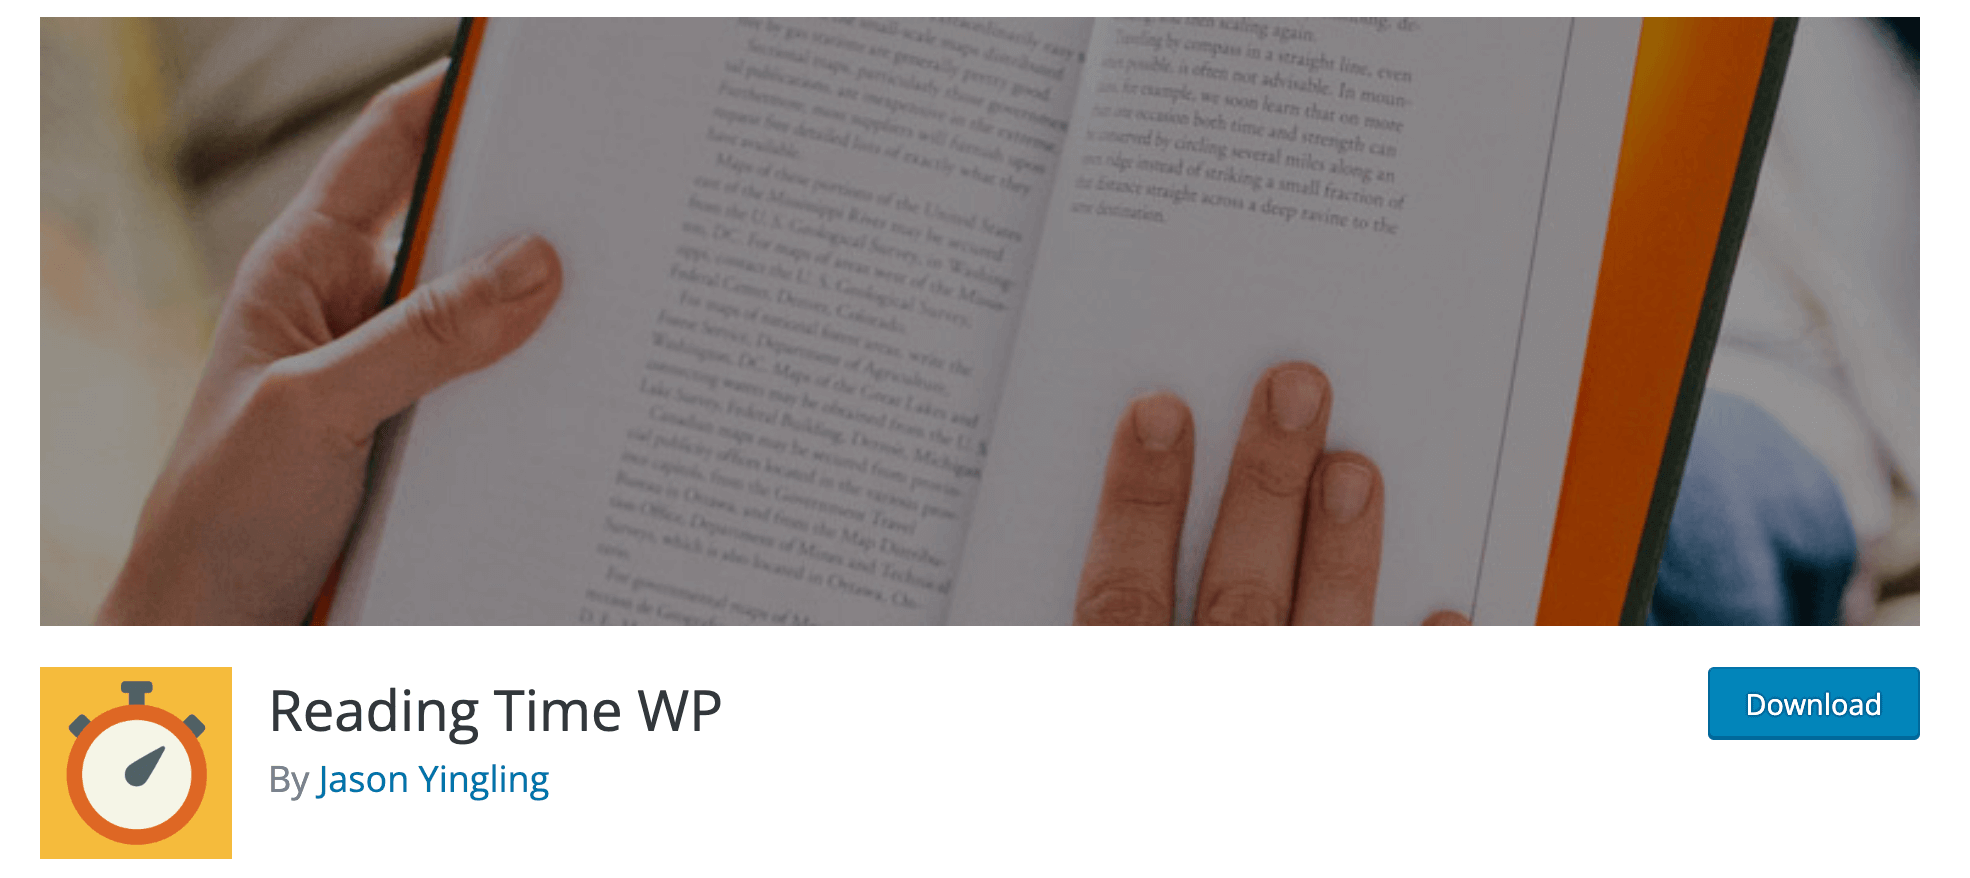 Plugin Reading Time WP für die Anzeige der Lesezeit bei WordPress Artikeln